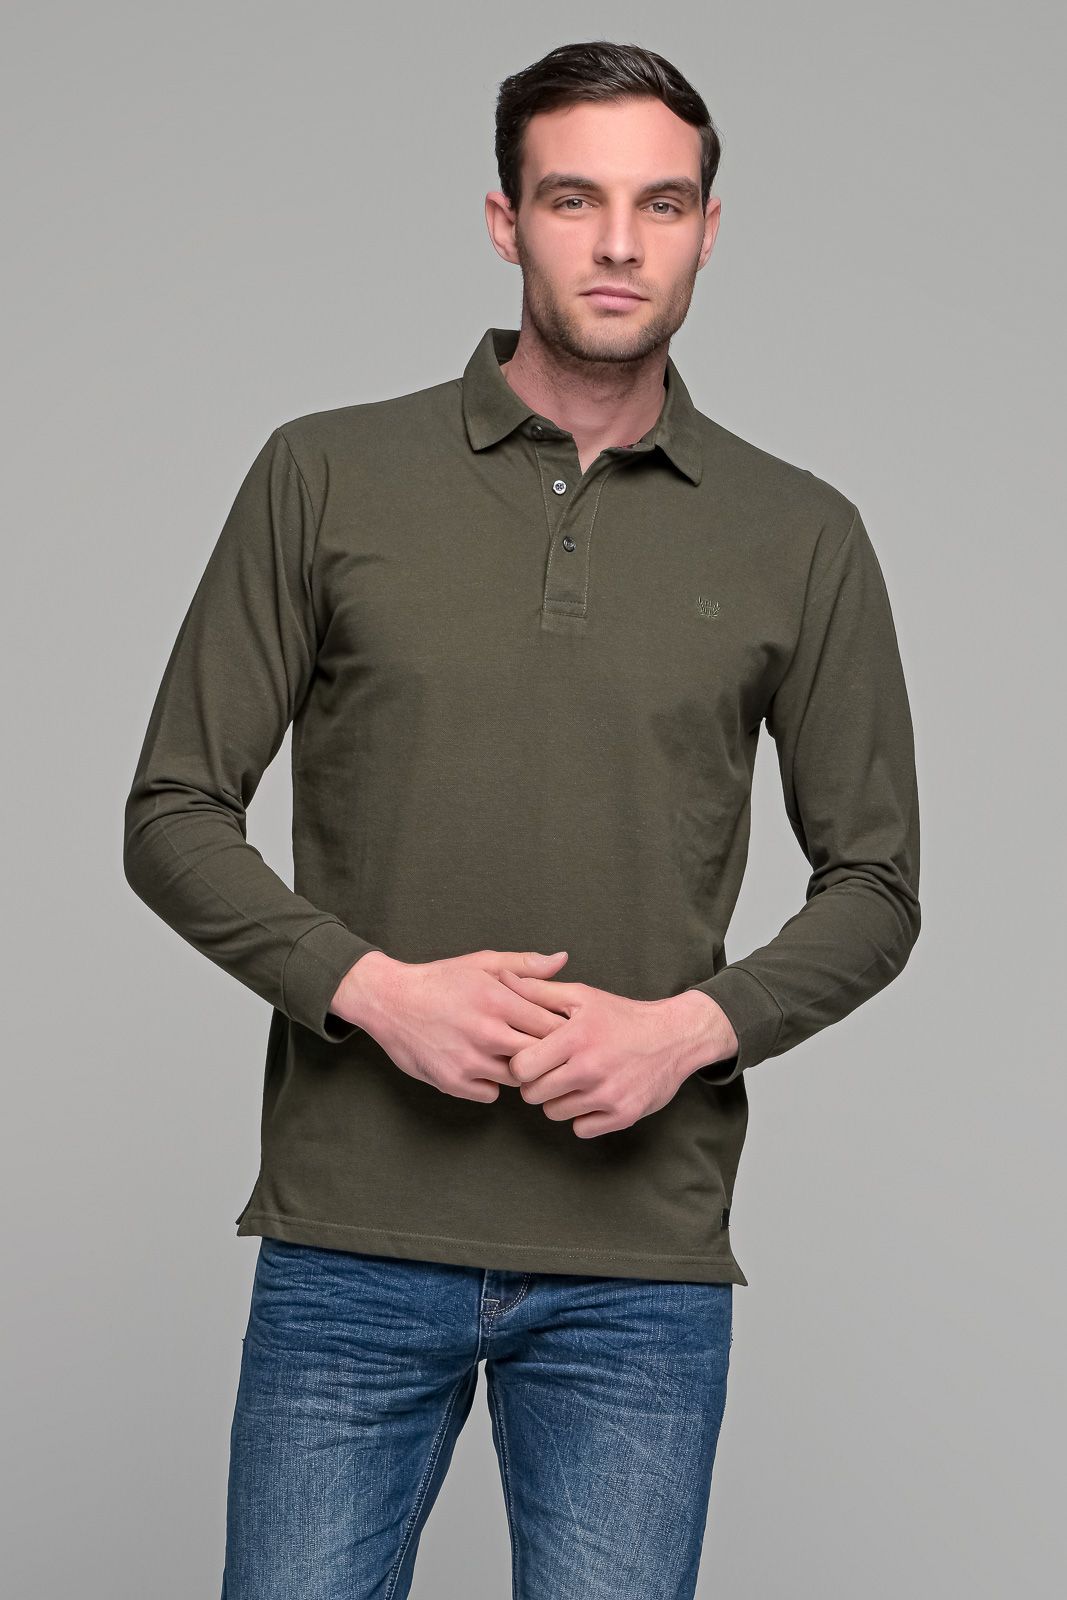 Πράσινο χακί βαμβακερό ανδρικό πόλο μπλουζάκι FR μακρυμάνικο - Regular fit